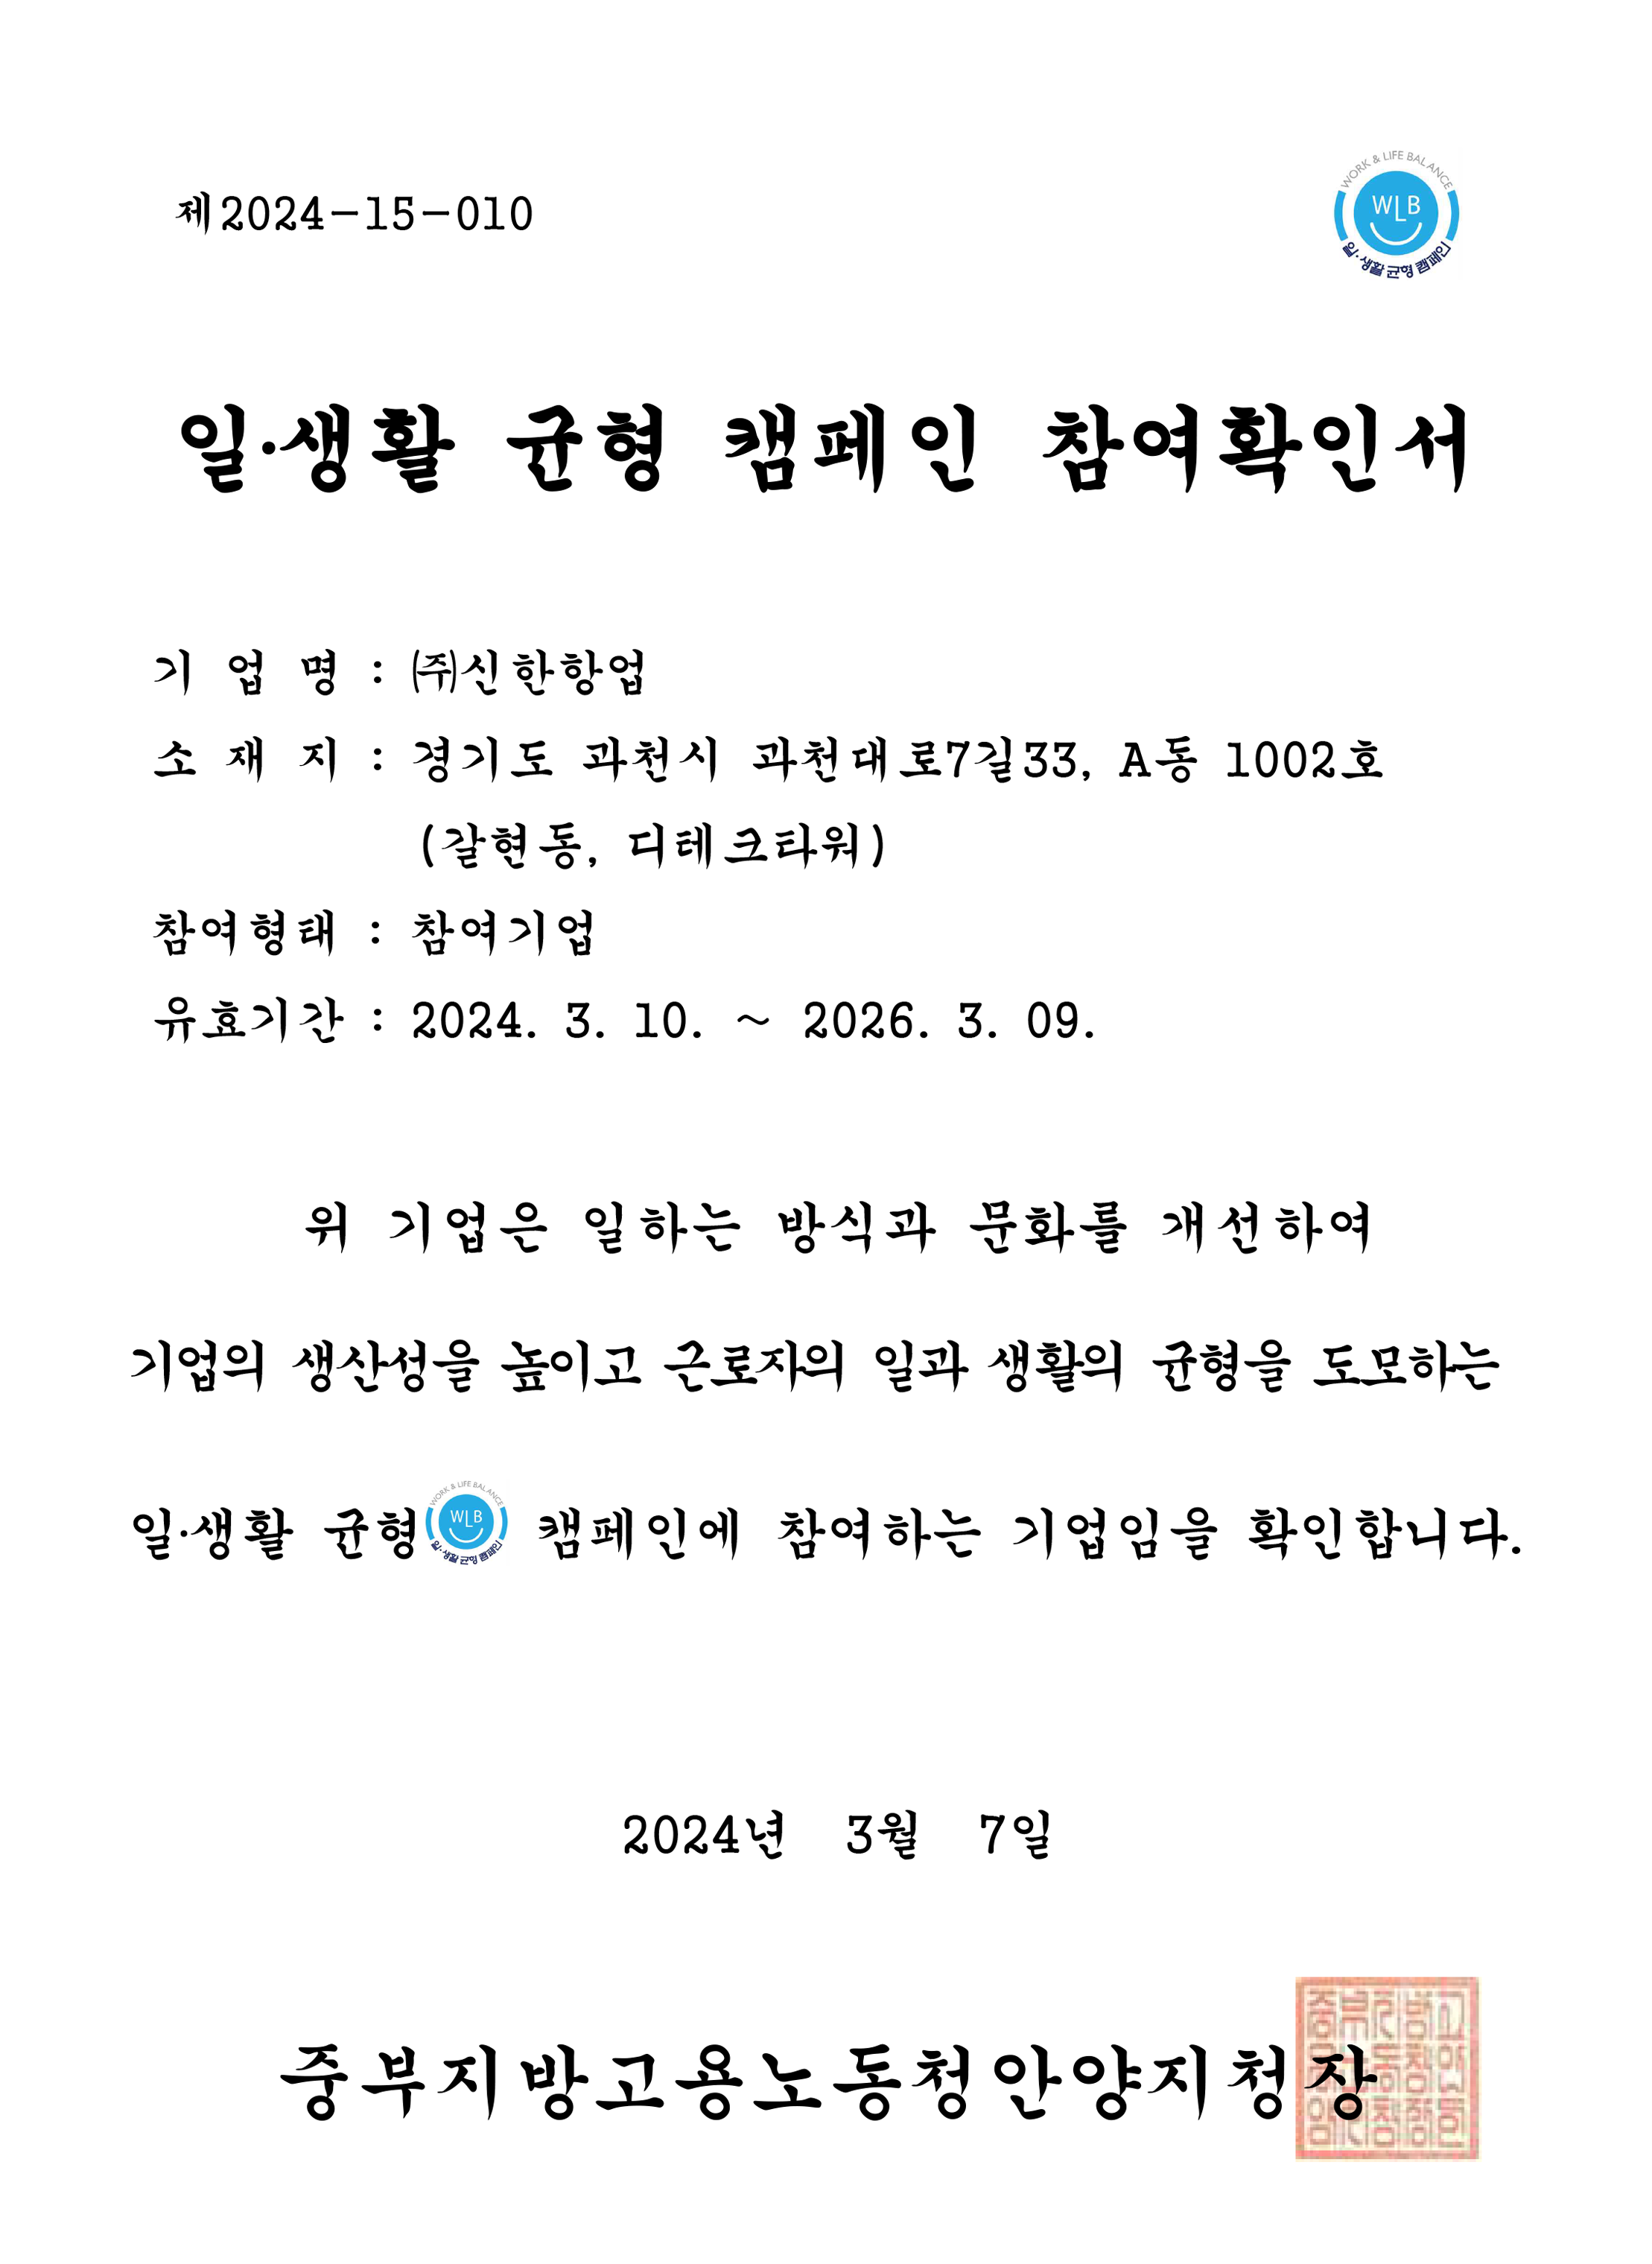 여백_참여확인서-10 (주)신한항업_일생활캠페인 24.03.10-26.03.09